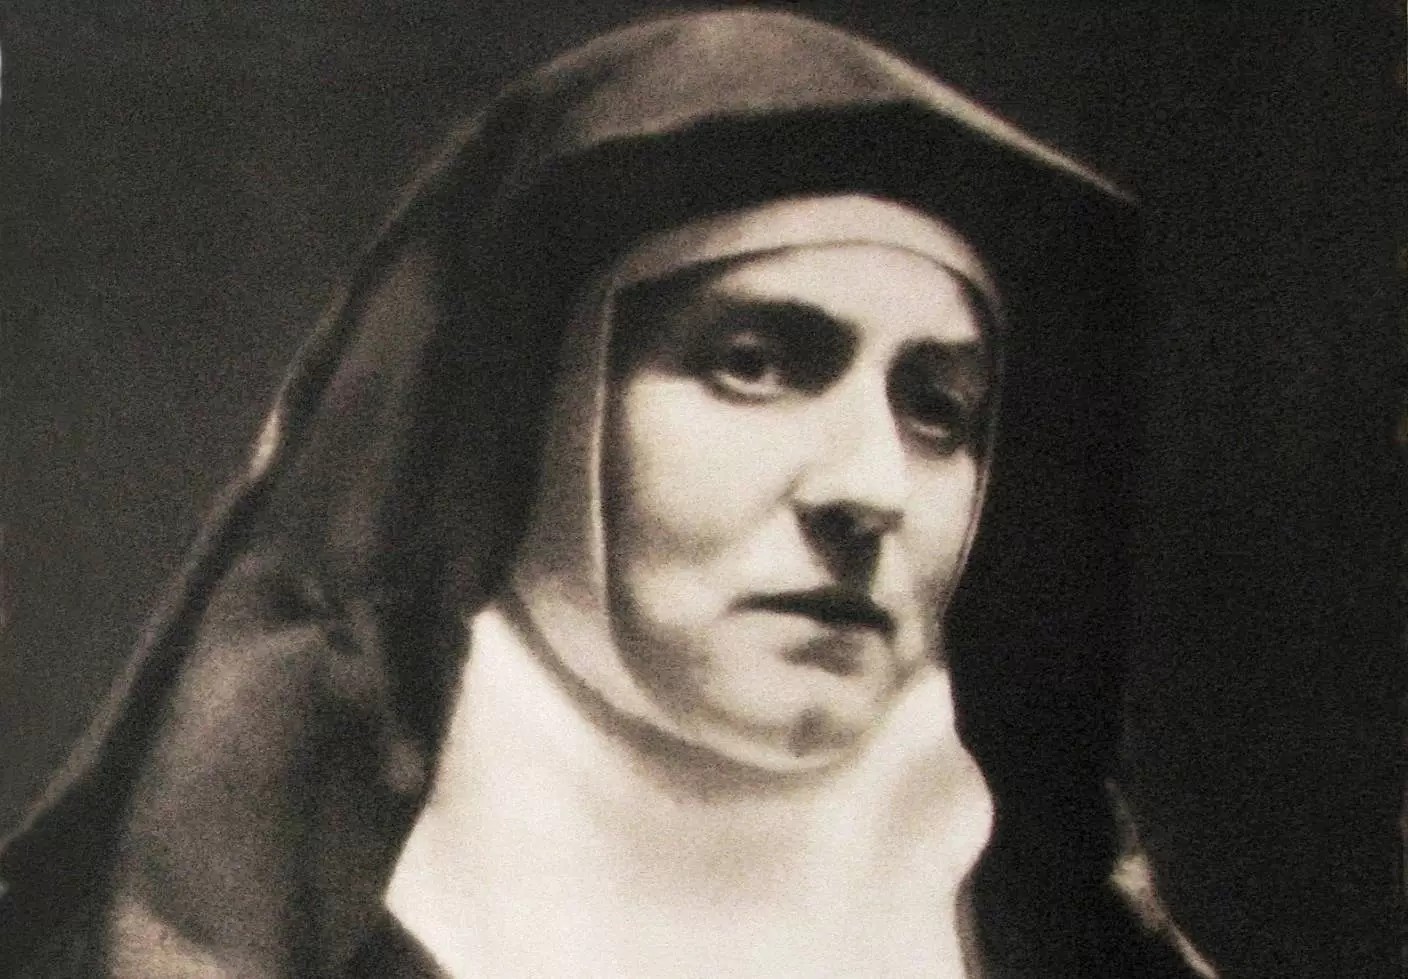 Fête 9 août d'Edith Stein - Sainte Sœur Thérèse-Bénédicte de la Croix, martyre et mise à mort par les nazis Therese-benedicte-edith-stein-1